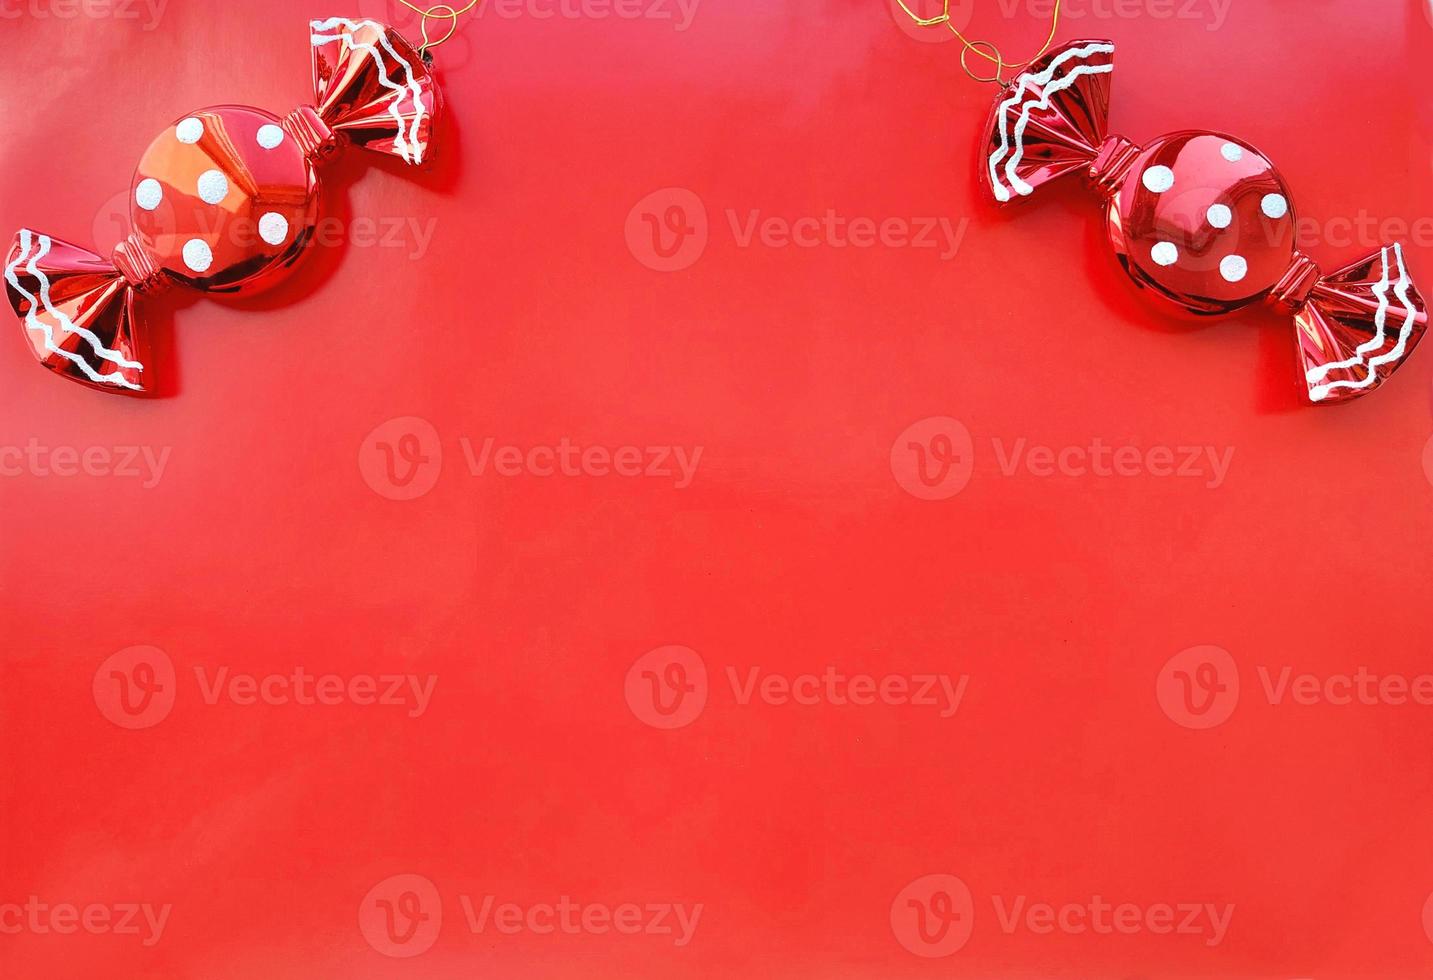 decorazioni natalizie a pois di caramelle su sfondo rosso. banner, bordo orizzontale, cornice con posto per testo. copia spazio foto